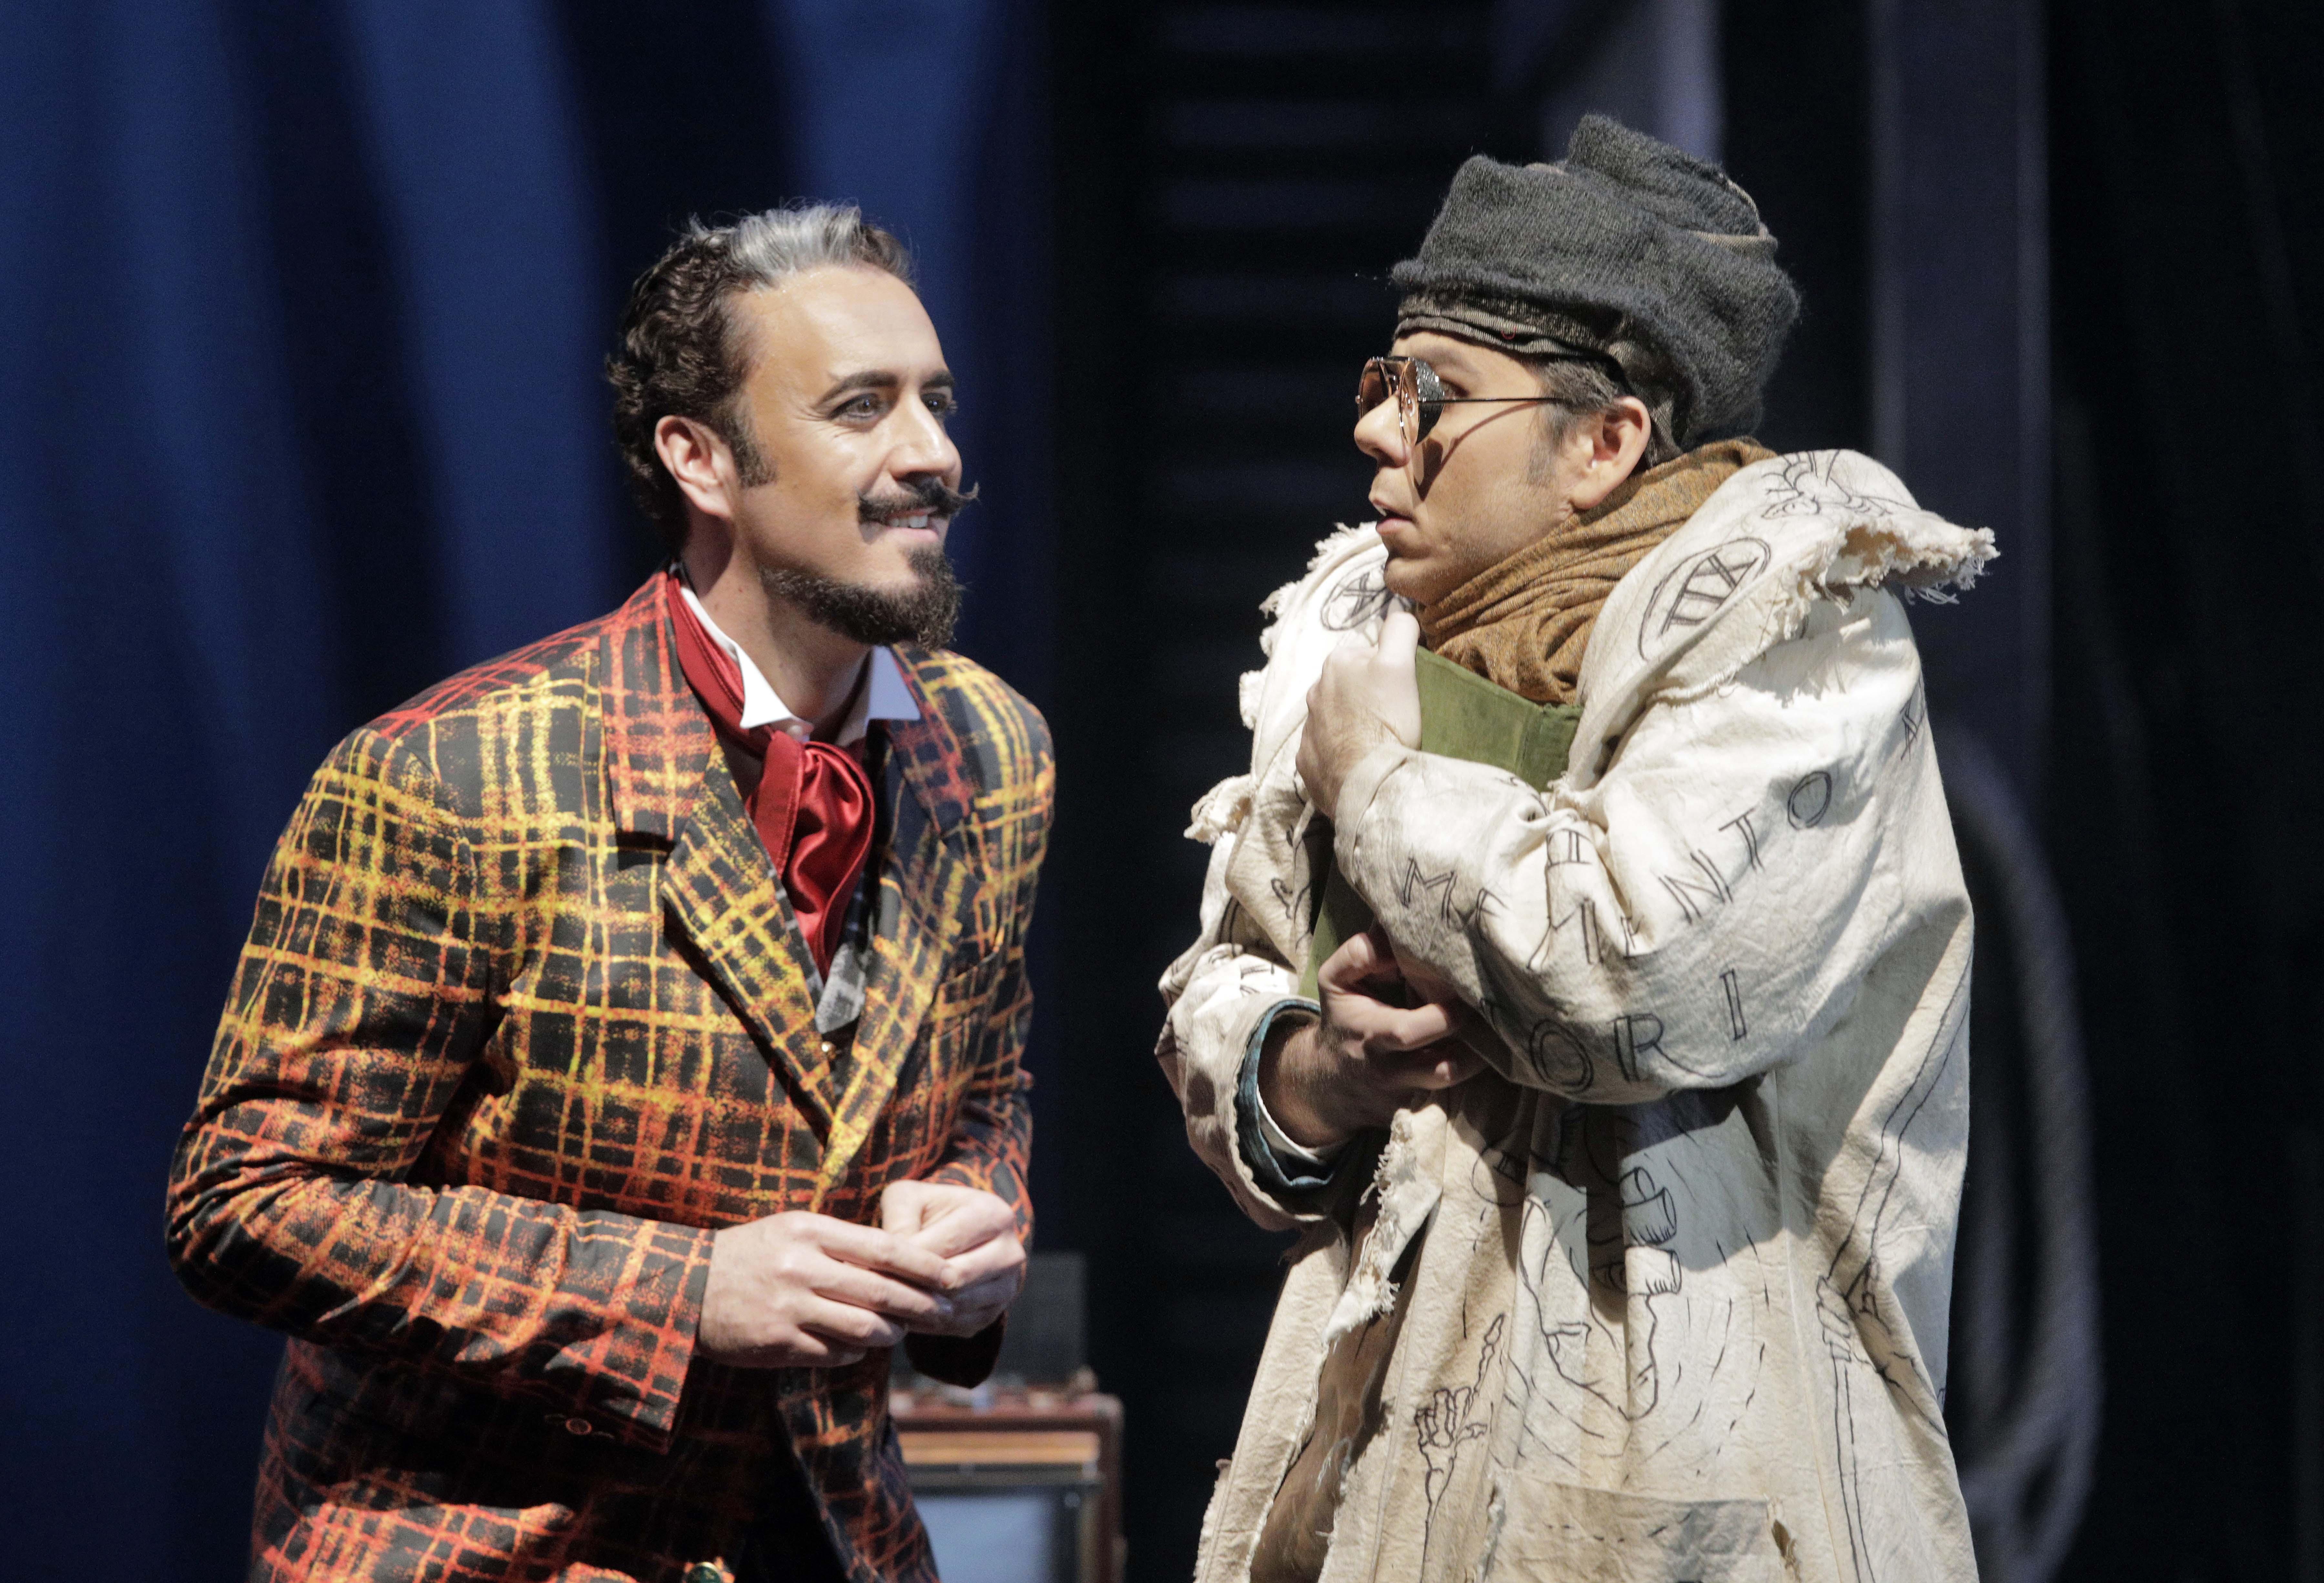 Christian Van Horn and Benjamin Bernheim in “Faust” at Lyric Opera of Chicago. (Credit: Cory Weaver)